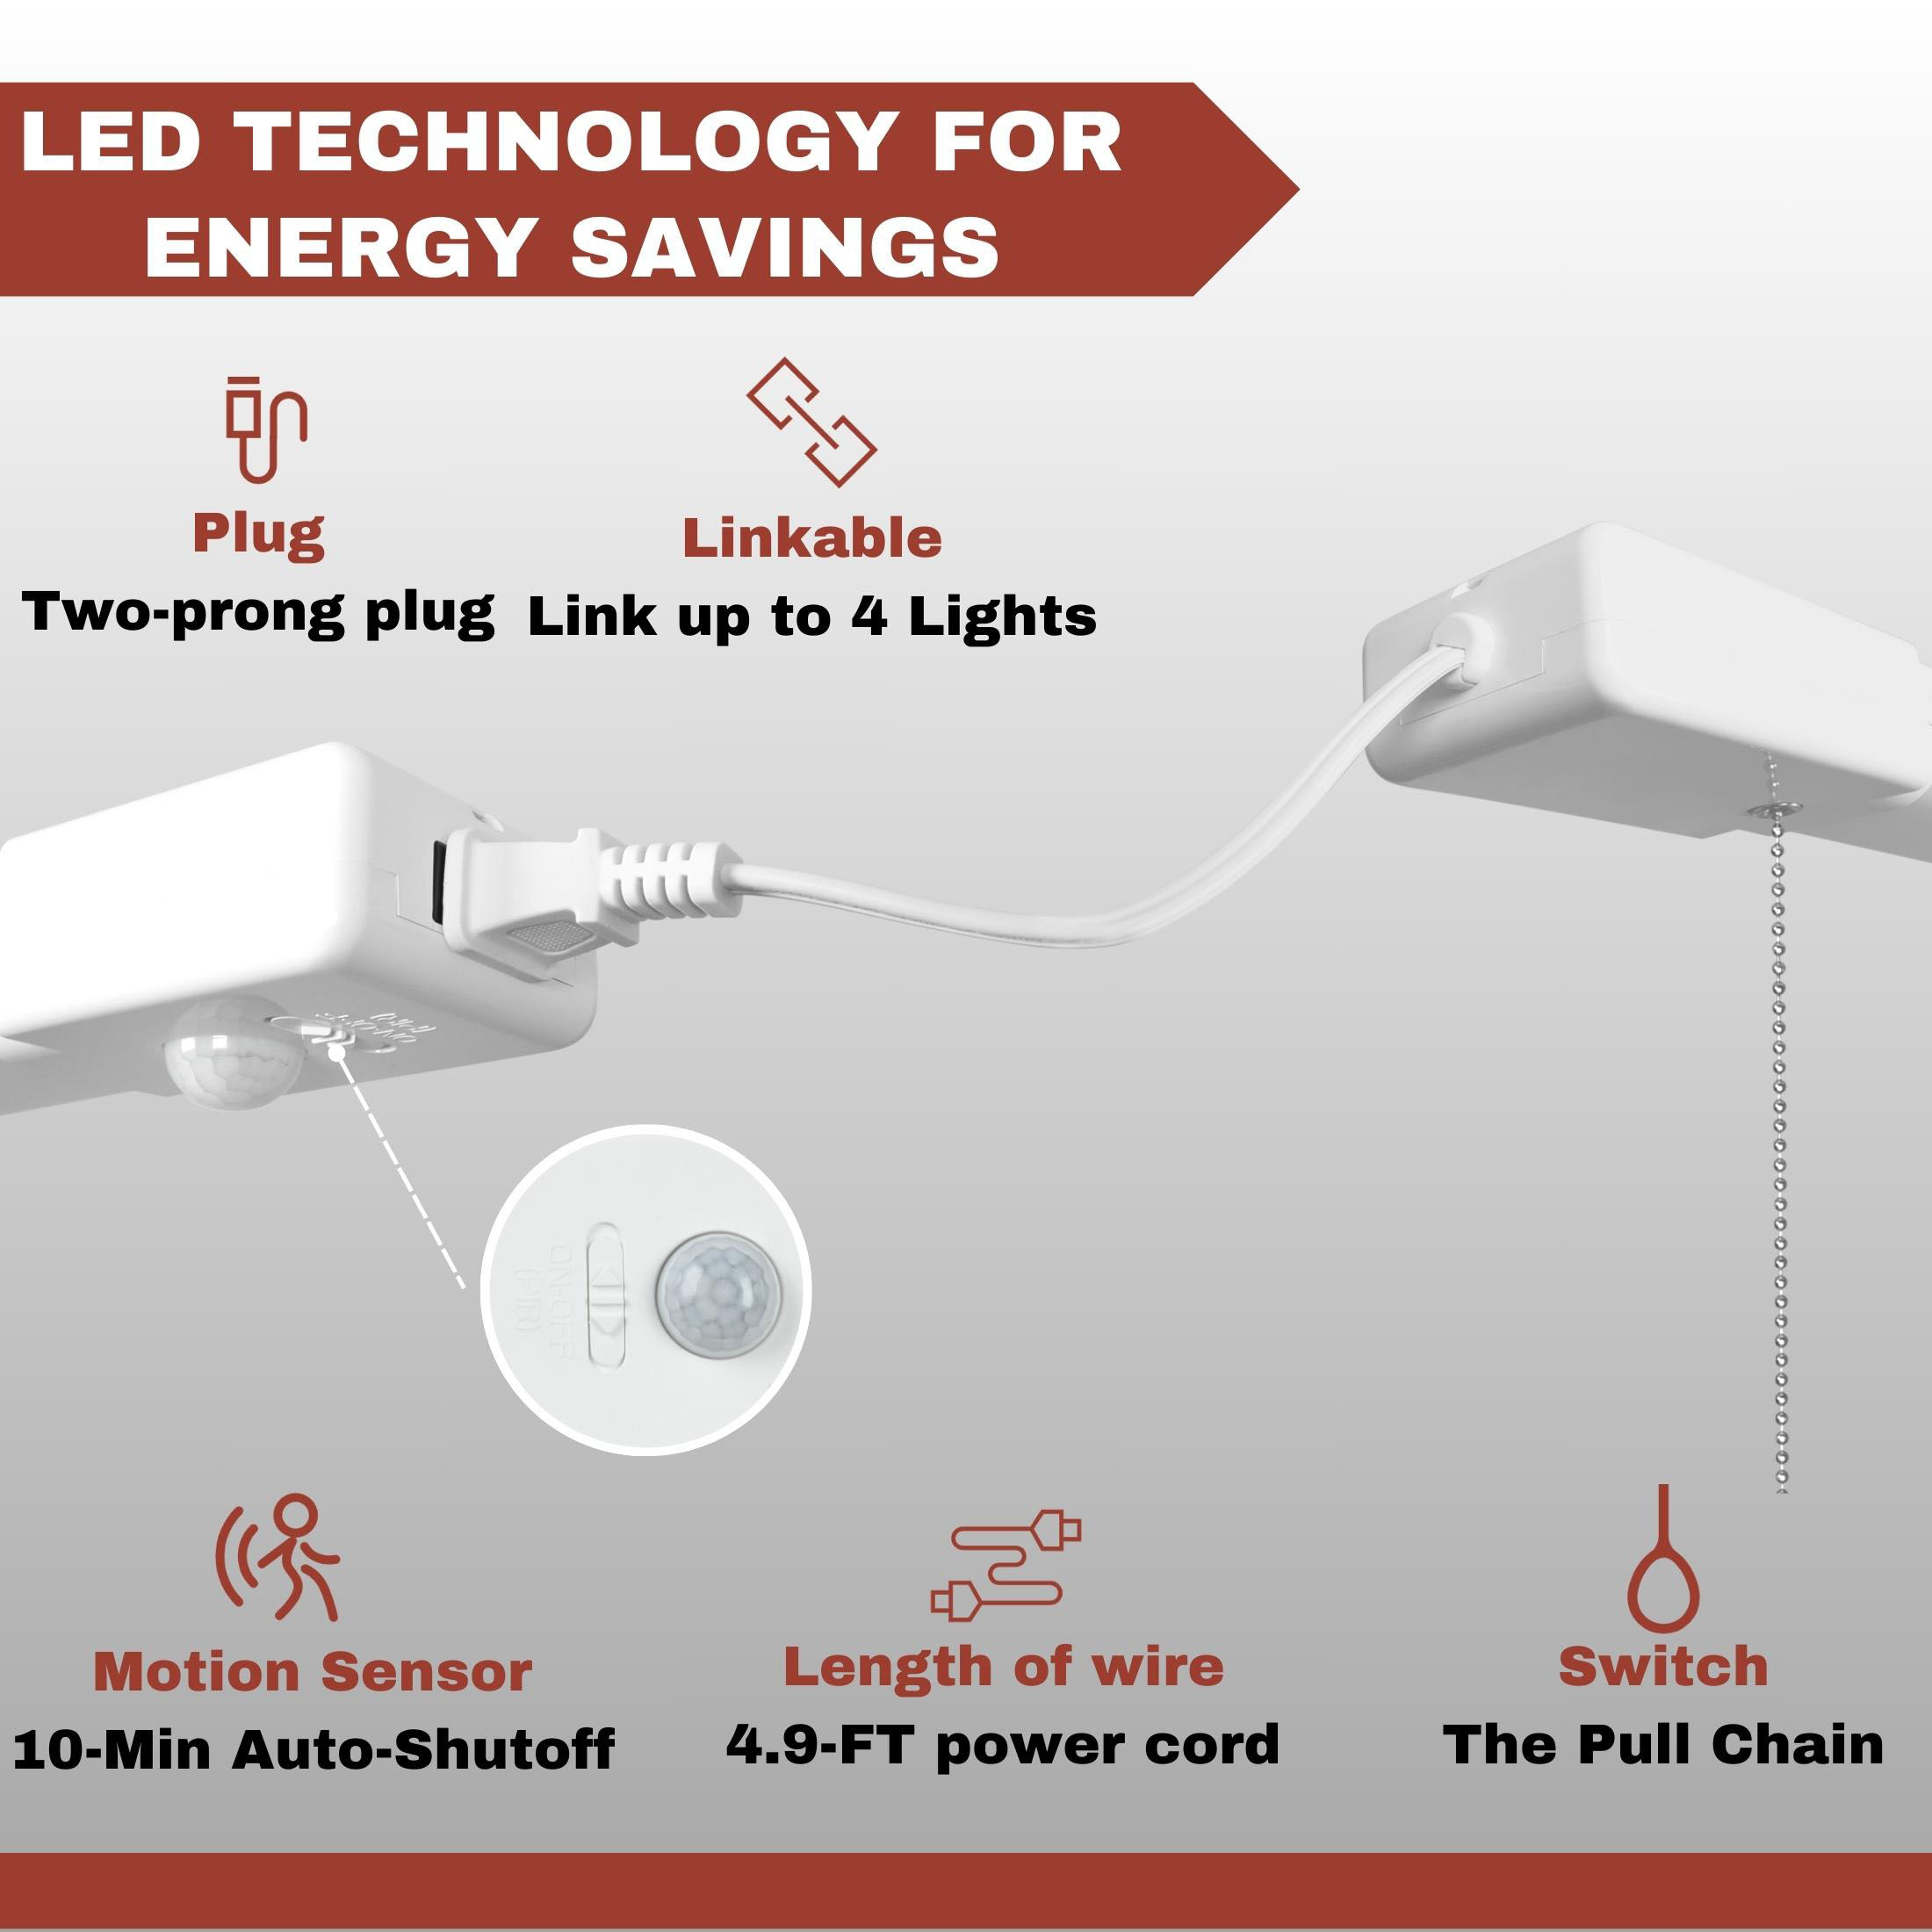 Hyper Tough 3-FT 4500-Lumen Integrated LED Shop Light, Slim Design, Linkable and Motion Sensor, 1PK - image 5 of 10